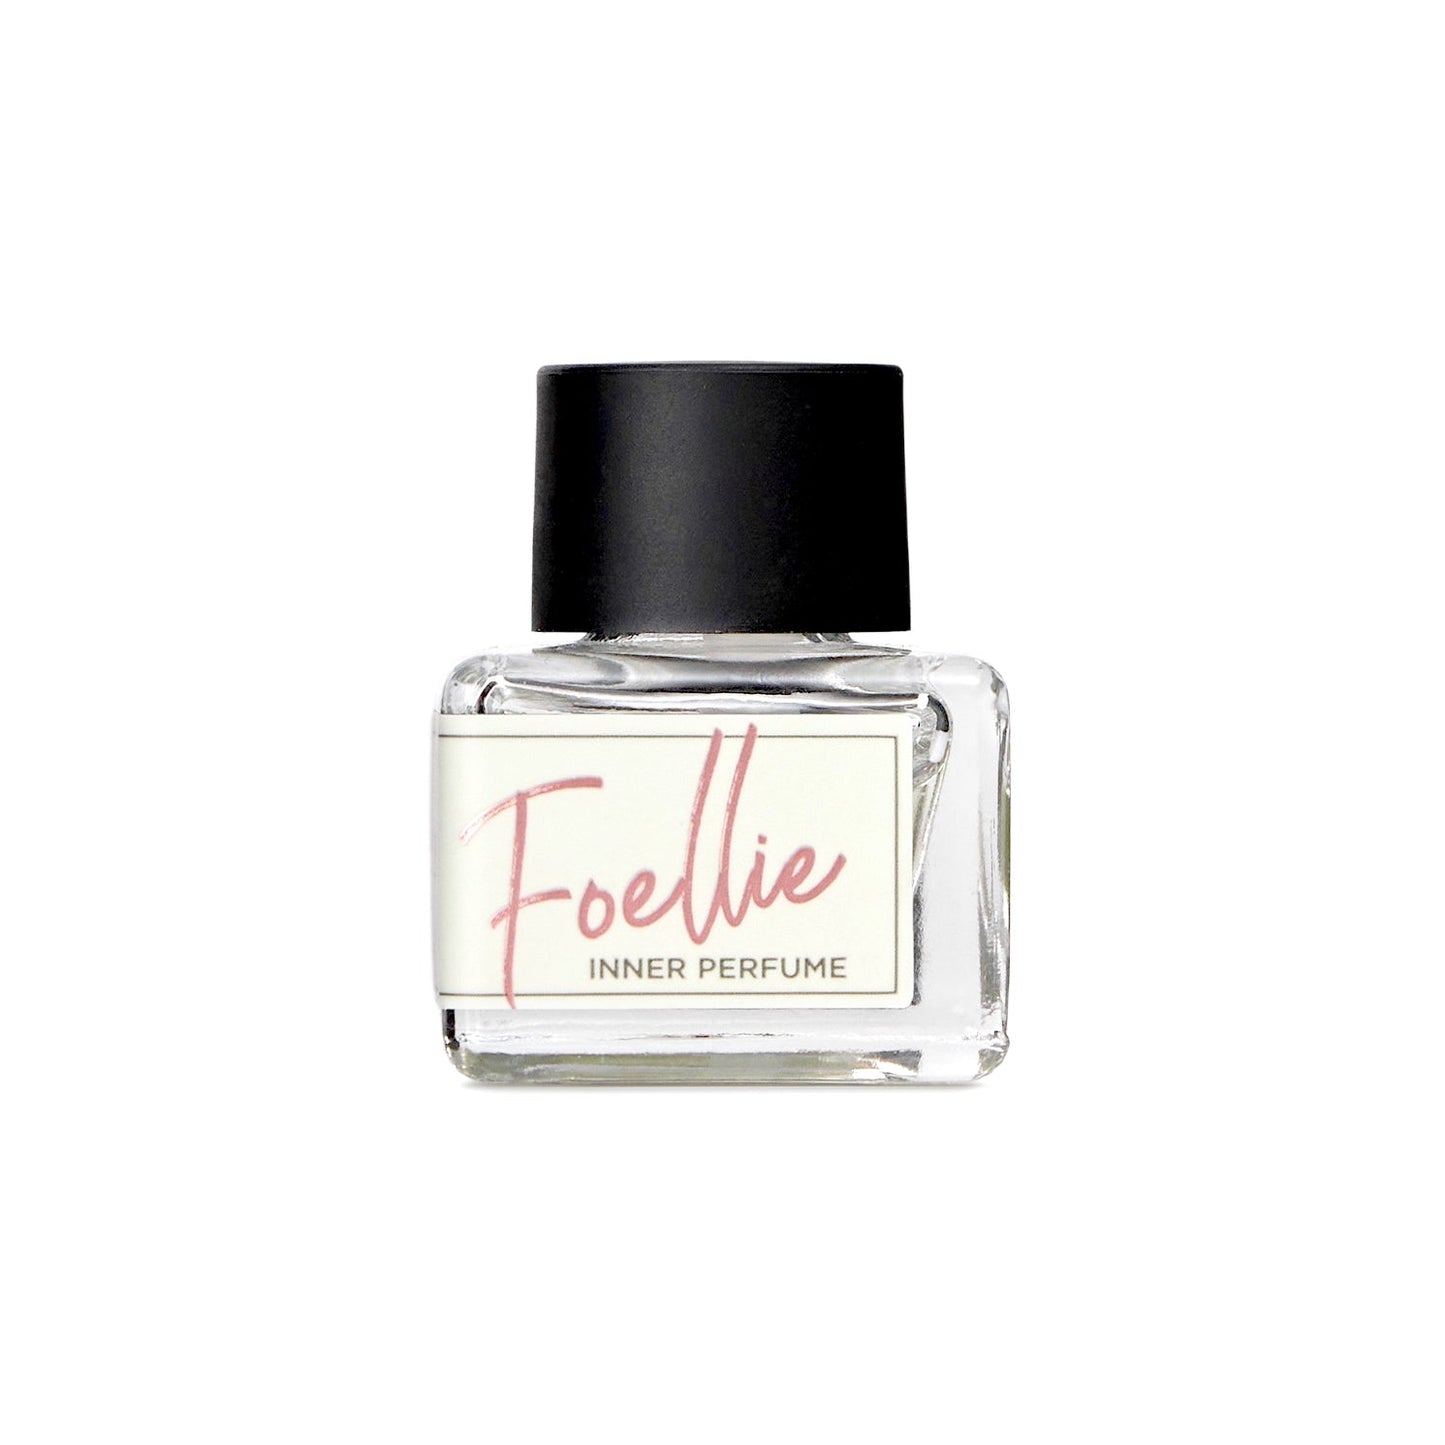 Nước Hoa Vùng Kín Foellie Eau de Bonbon Innerb Perfume 5ml